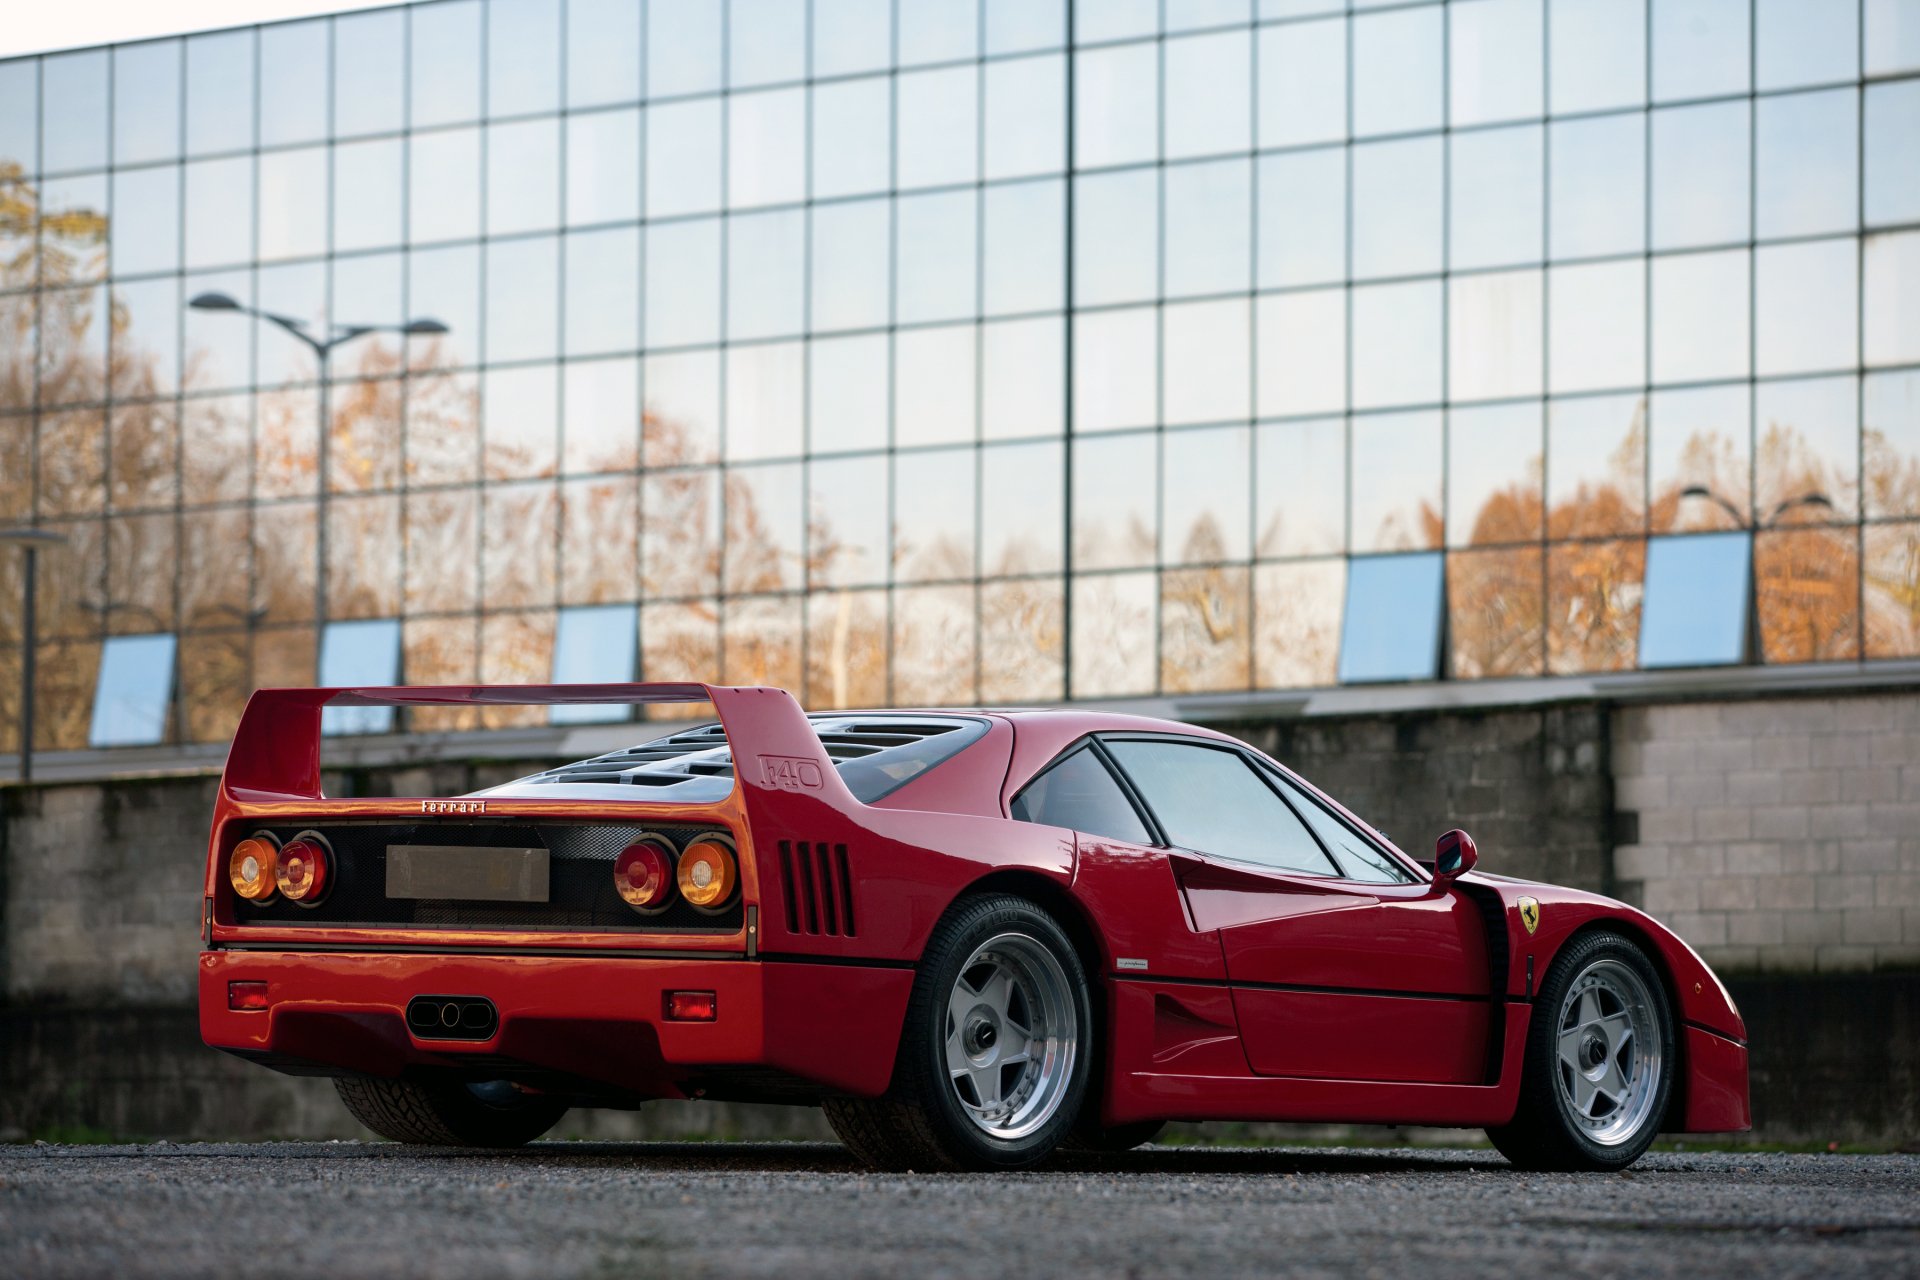 Ferrari F40 HD Wallpaper | Background Image | 3600x2400 | ID:993597 - Wallpaper Abyss